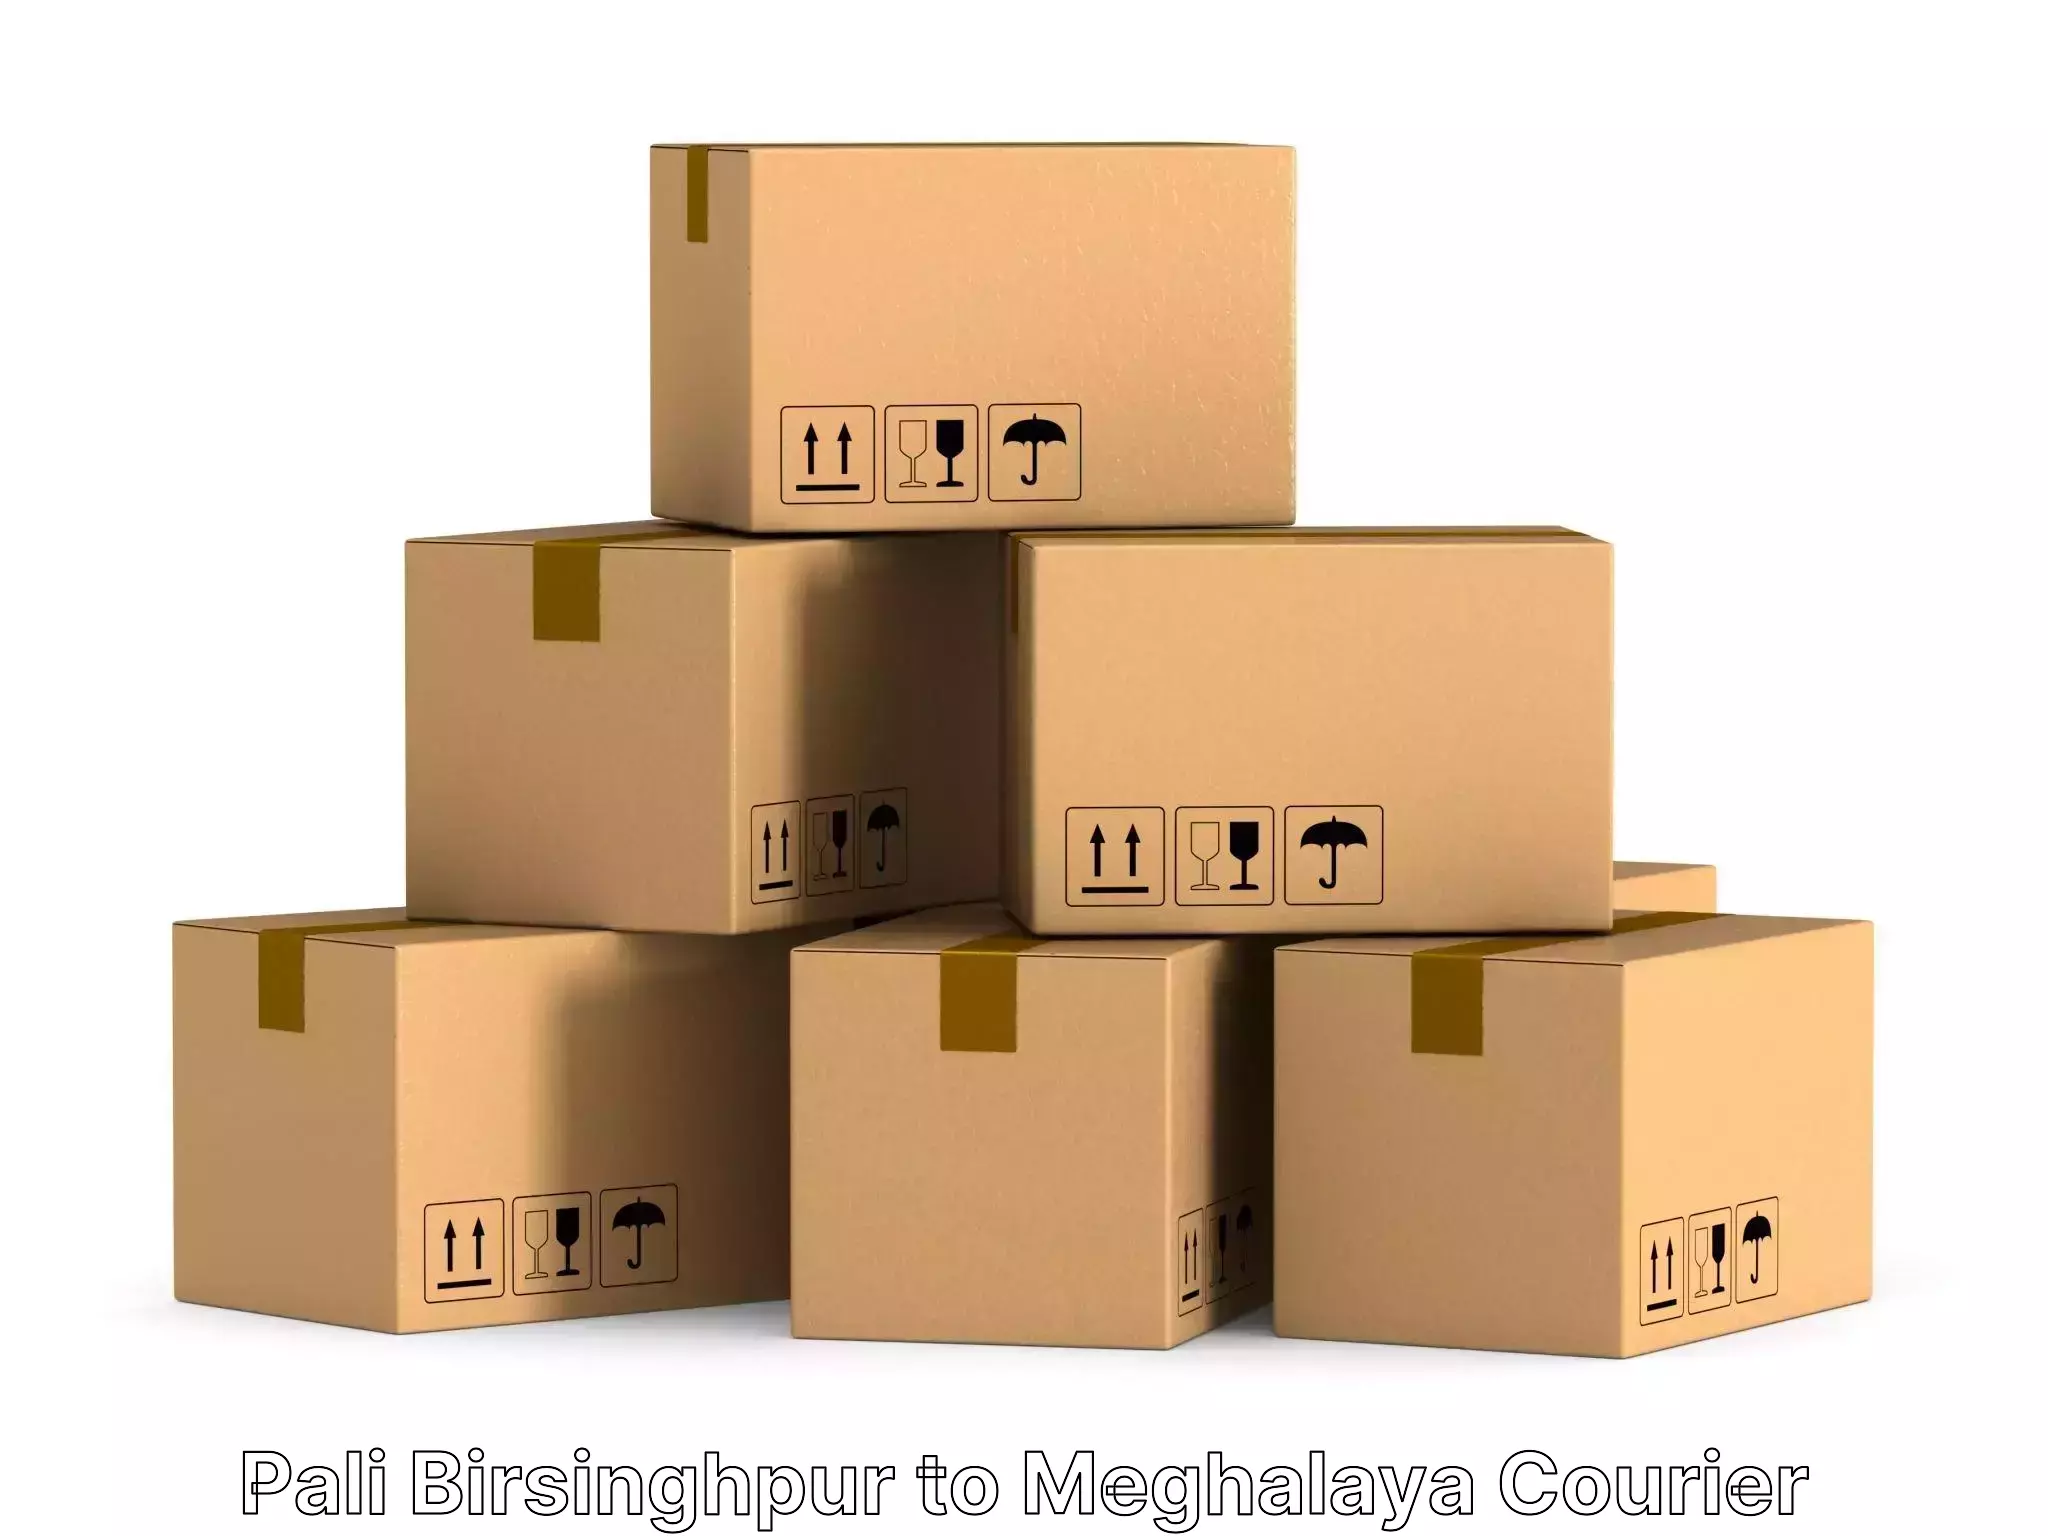 Home goods moving company Pali Birsinghpur to Umsaw